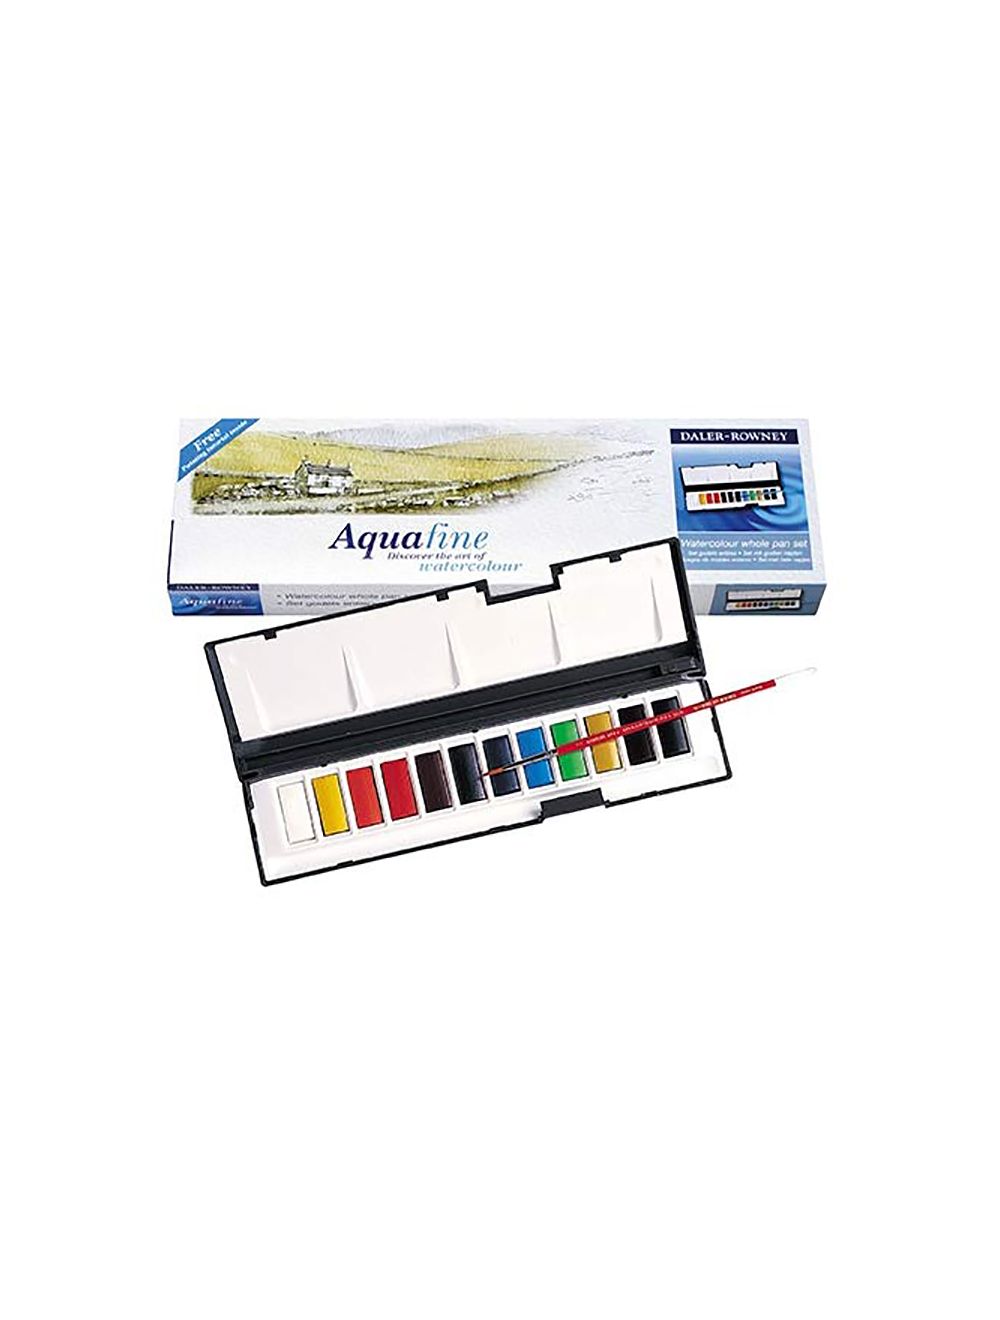 Aquafine Whole Pan Watercolor Set: 12 colors